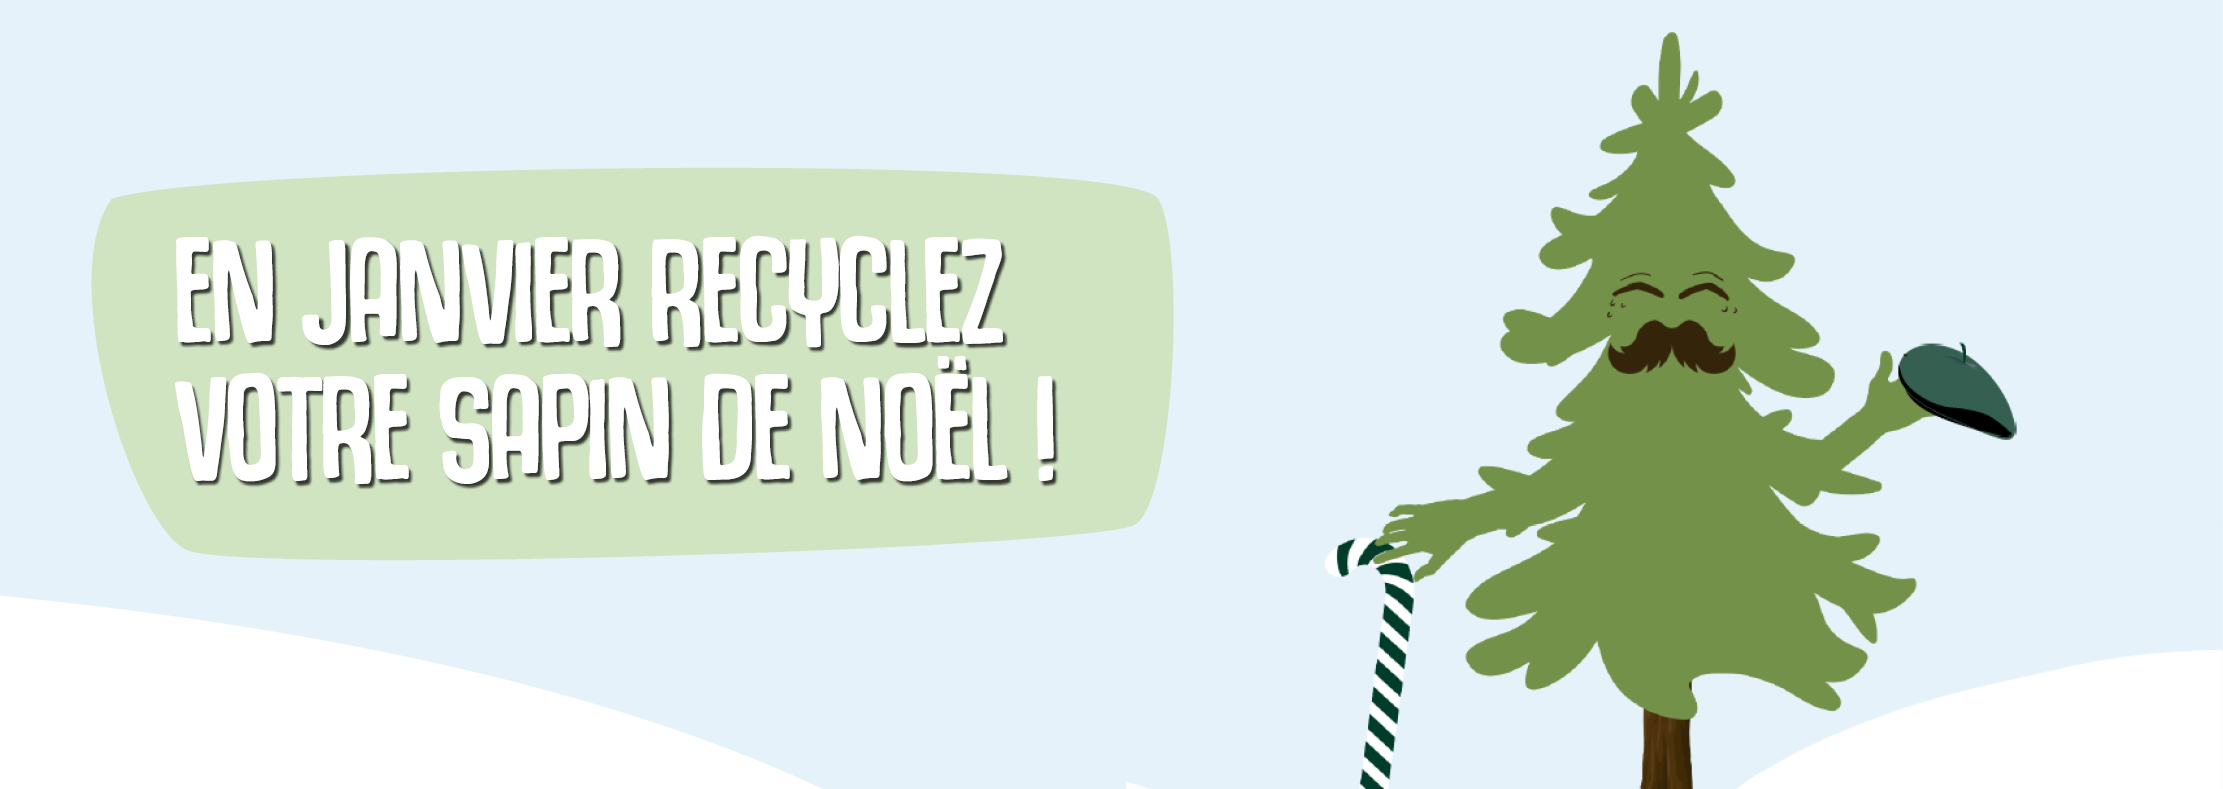 Visuel avec un sapin et le texte : En janvier, recyclez votre sapin !